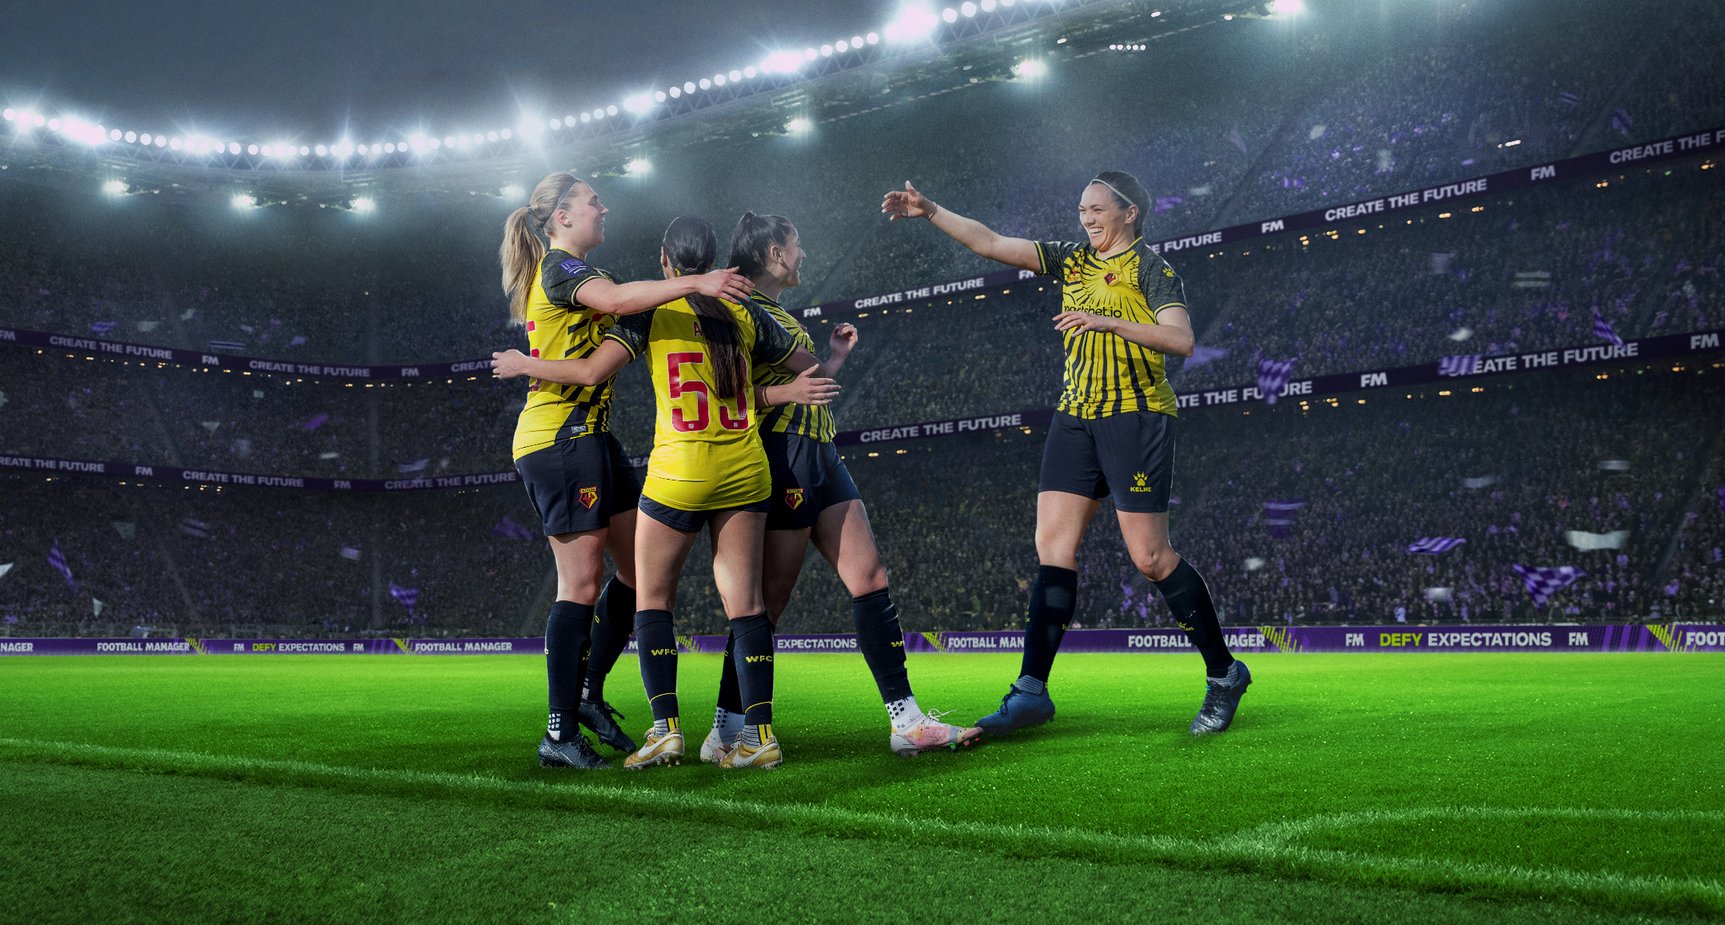 セガ公式アカウント セガグループ のsports Interactiveが手掛ける Football Manager シリーズにて 女子サッカーを実装するプロジェクトに着手 同シリーズは 実在のクラブや選手なども多数登場するサッカークラブ経営 シミュレーションゲームで 全